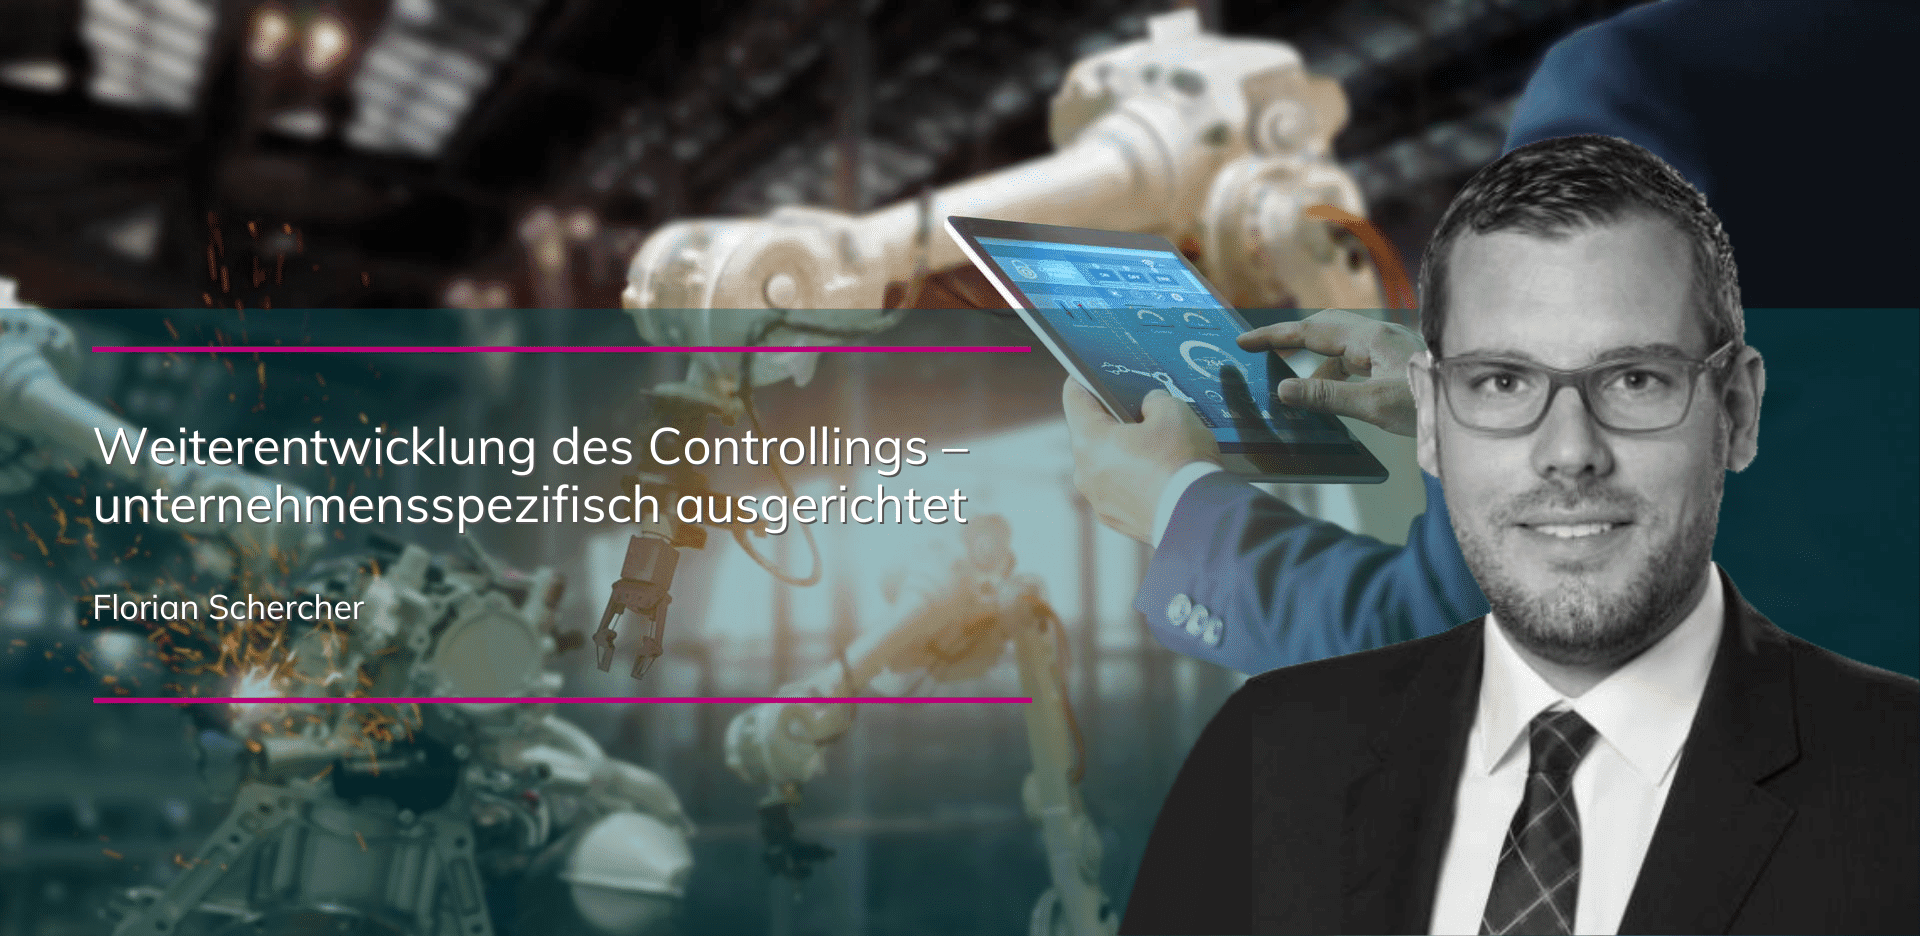 Florian Schercher - Weiterentwicklung des Controllings - unternehmensspezifisch ausgerichtet